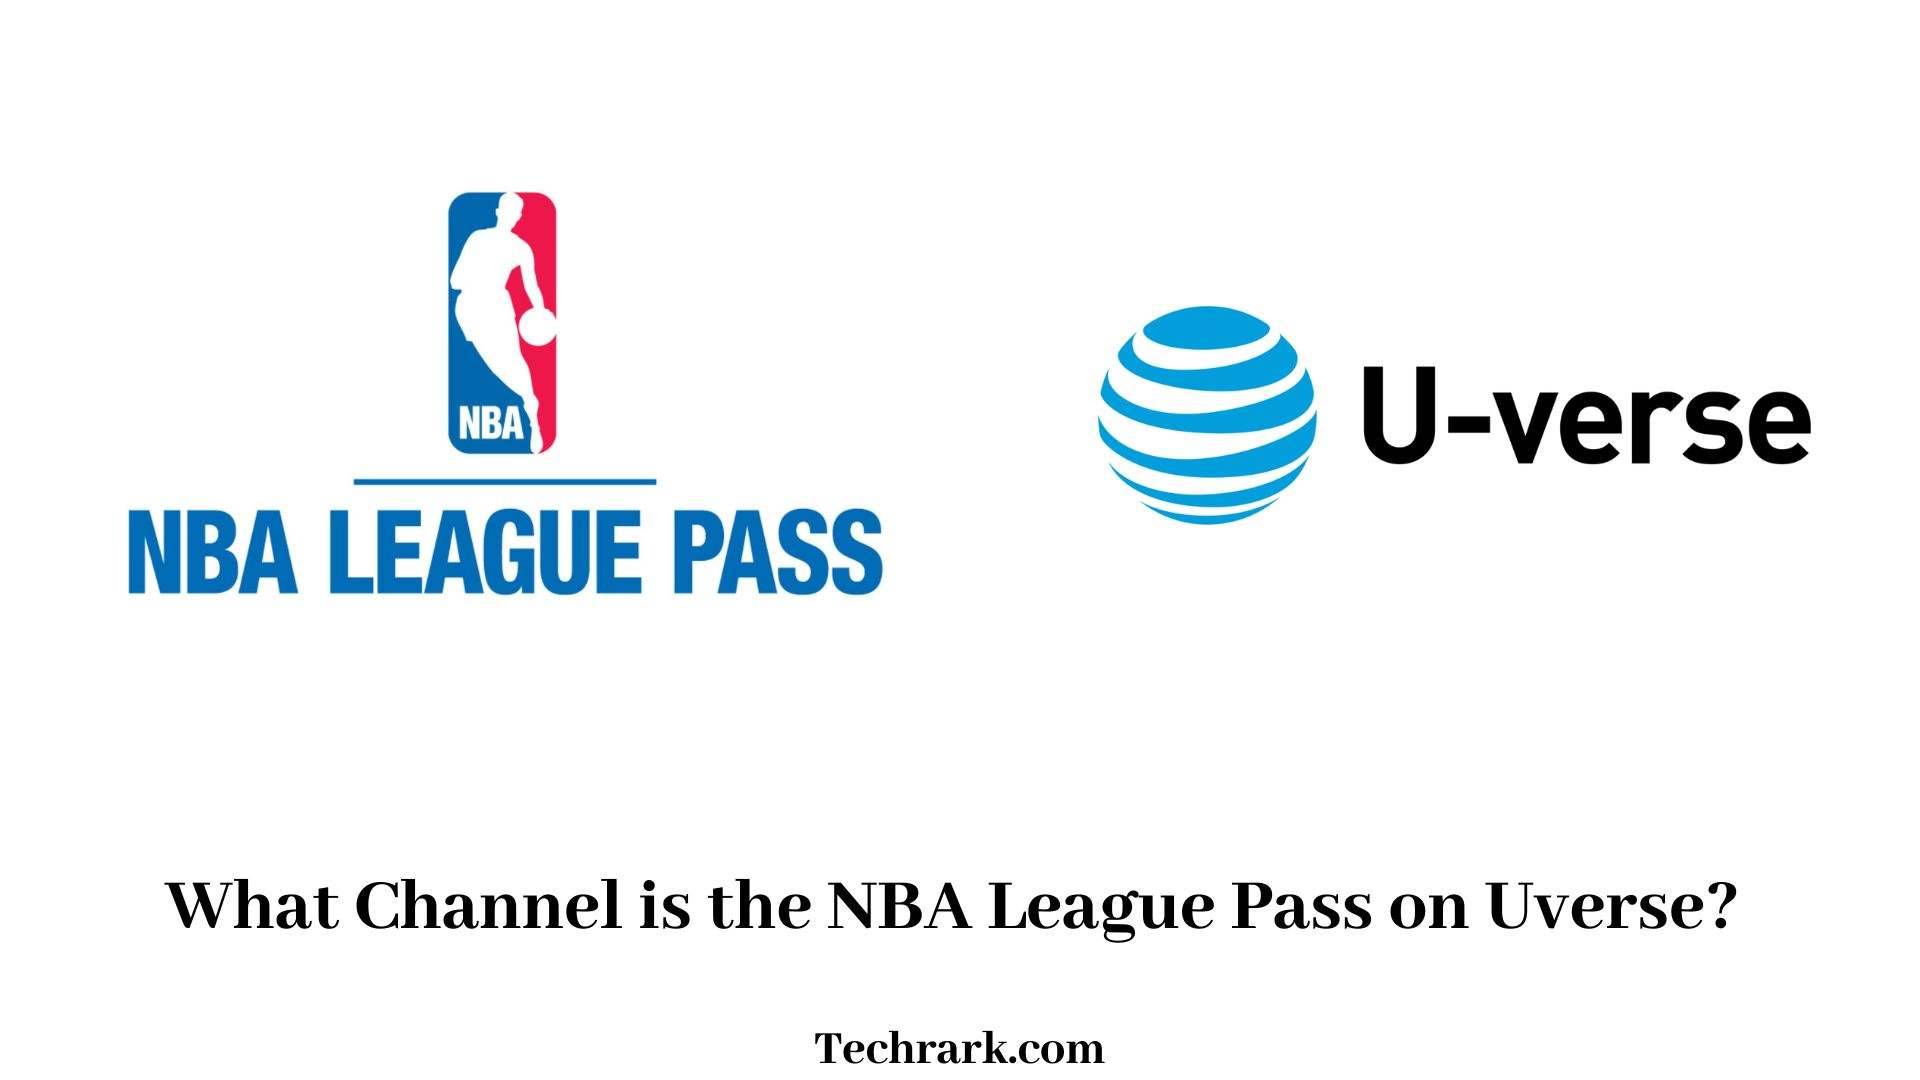 NBA League Pass on Uverse